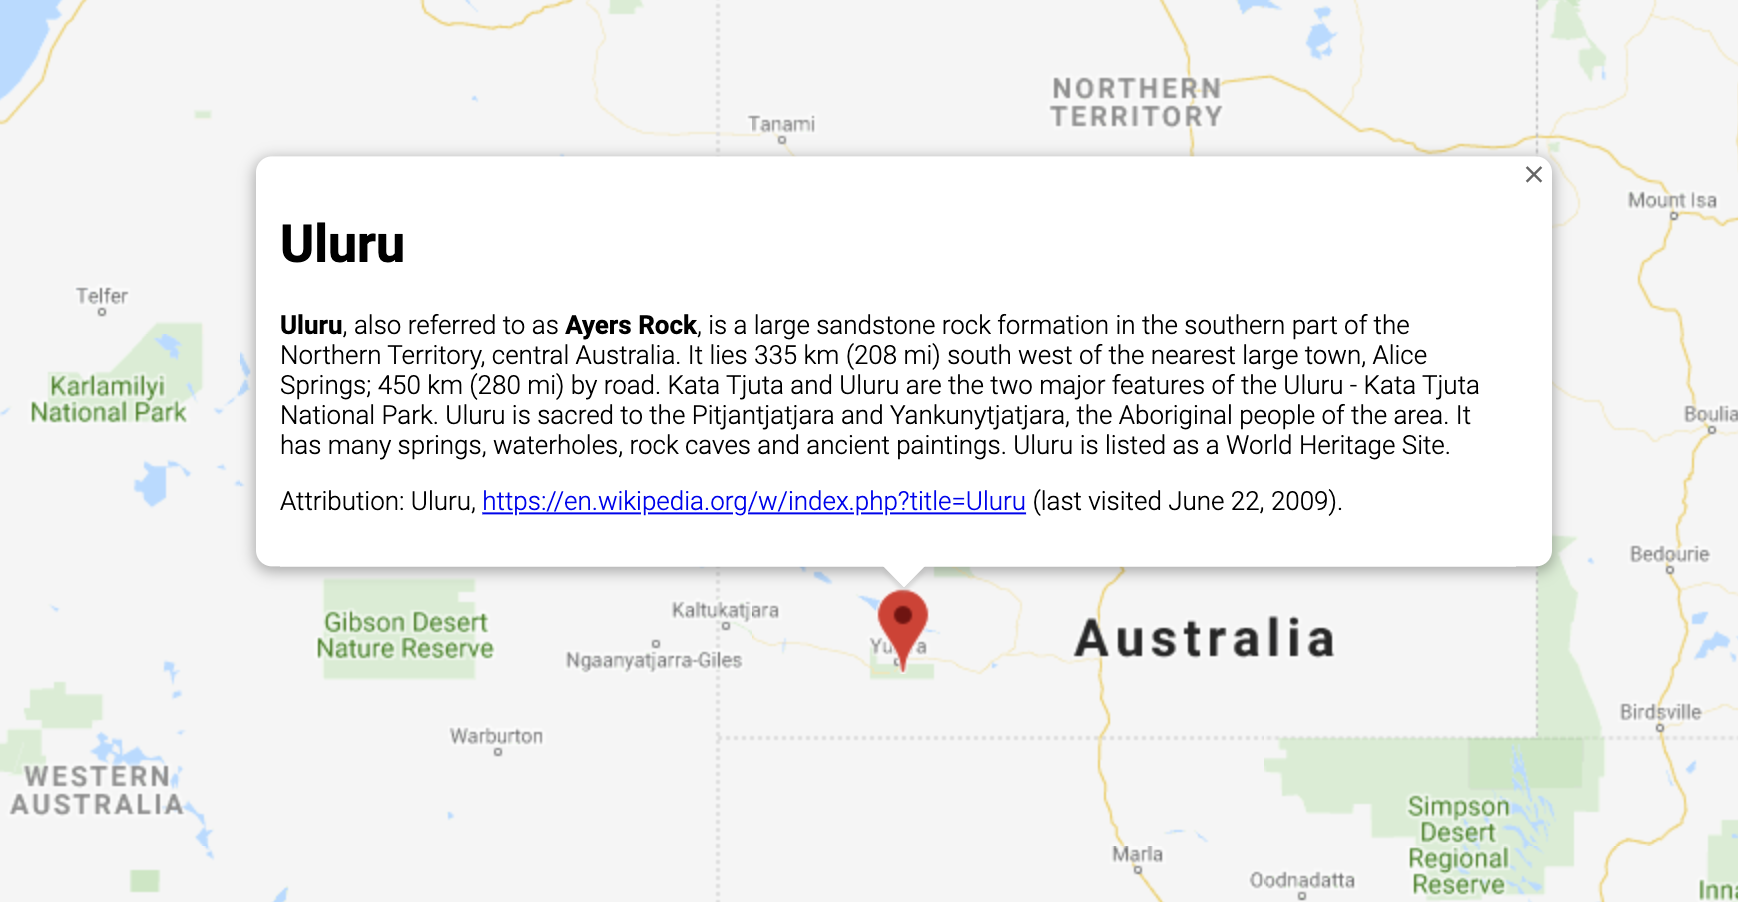 一个信息窗口，其中显示了澳大利亚某个位置的相关信息。